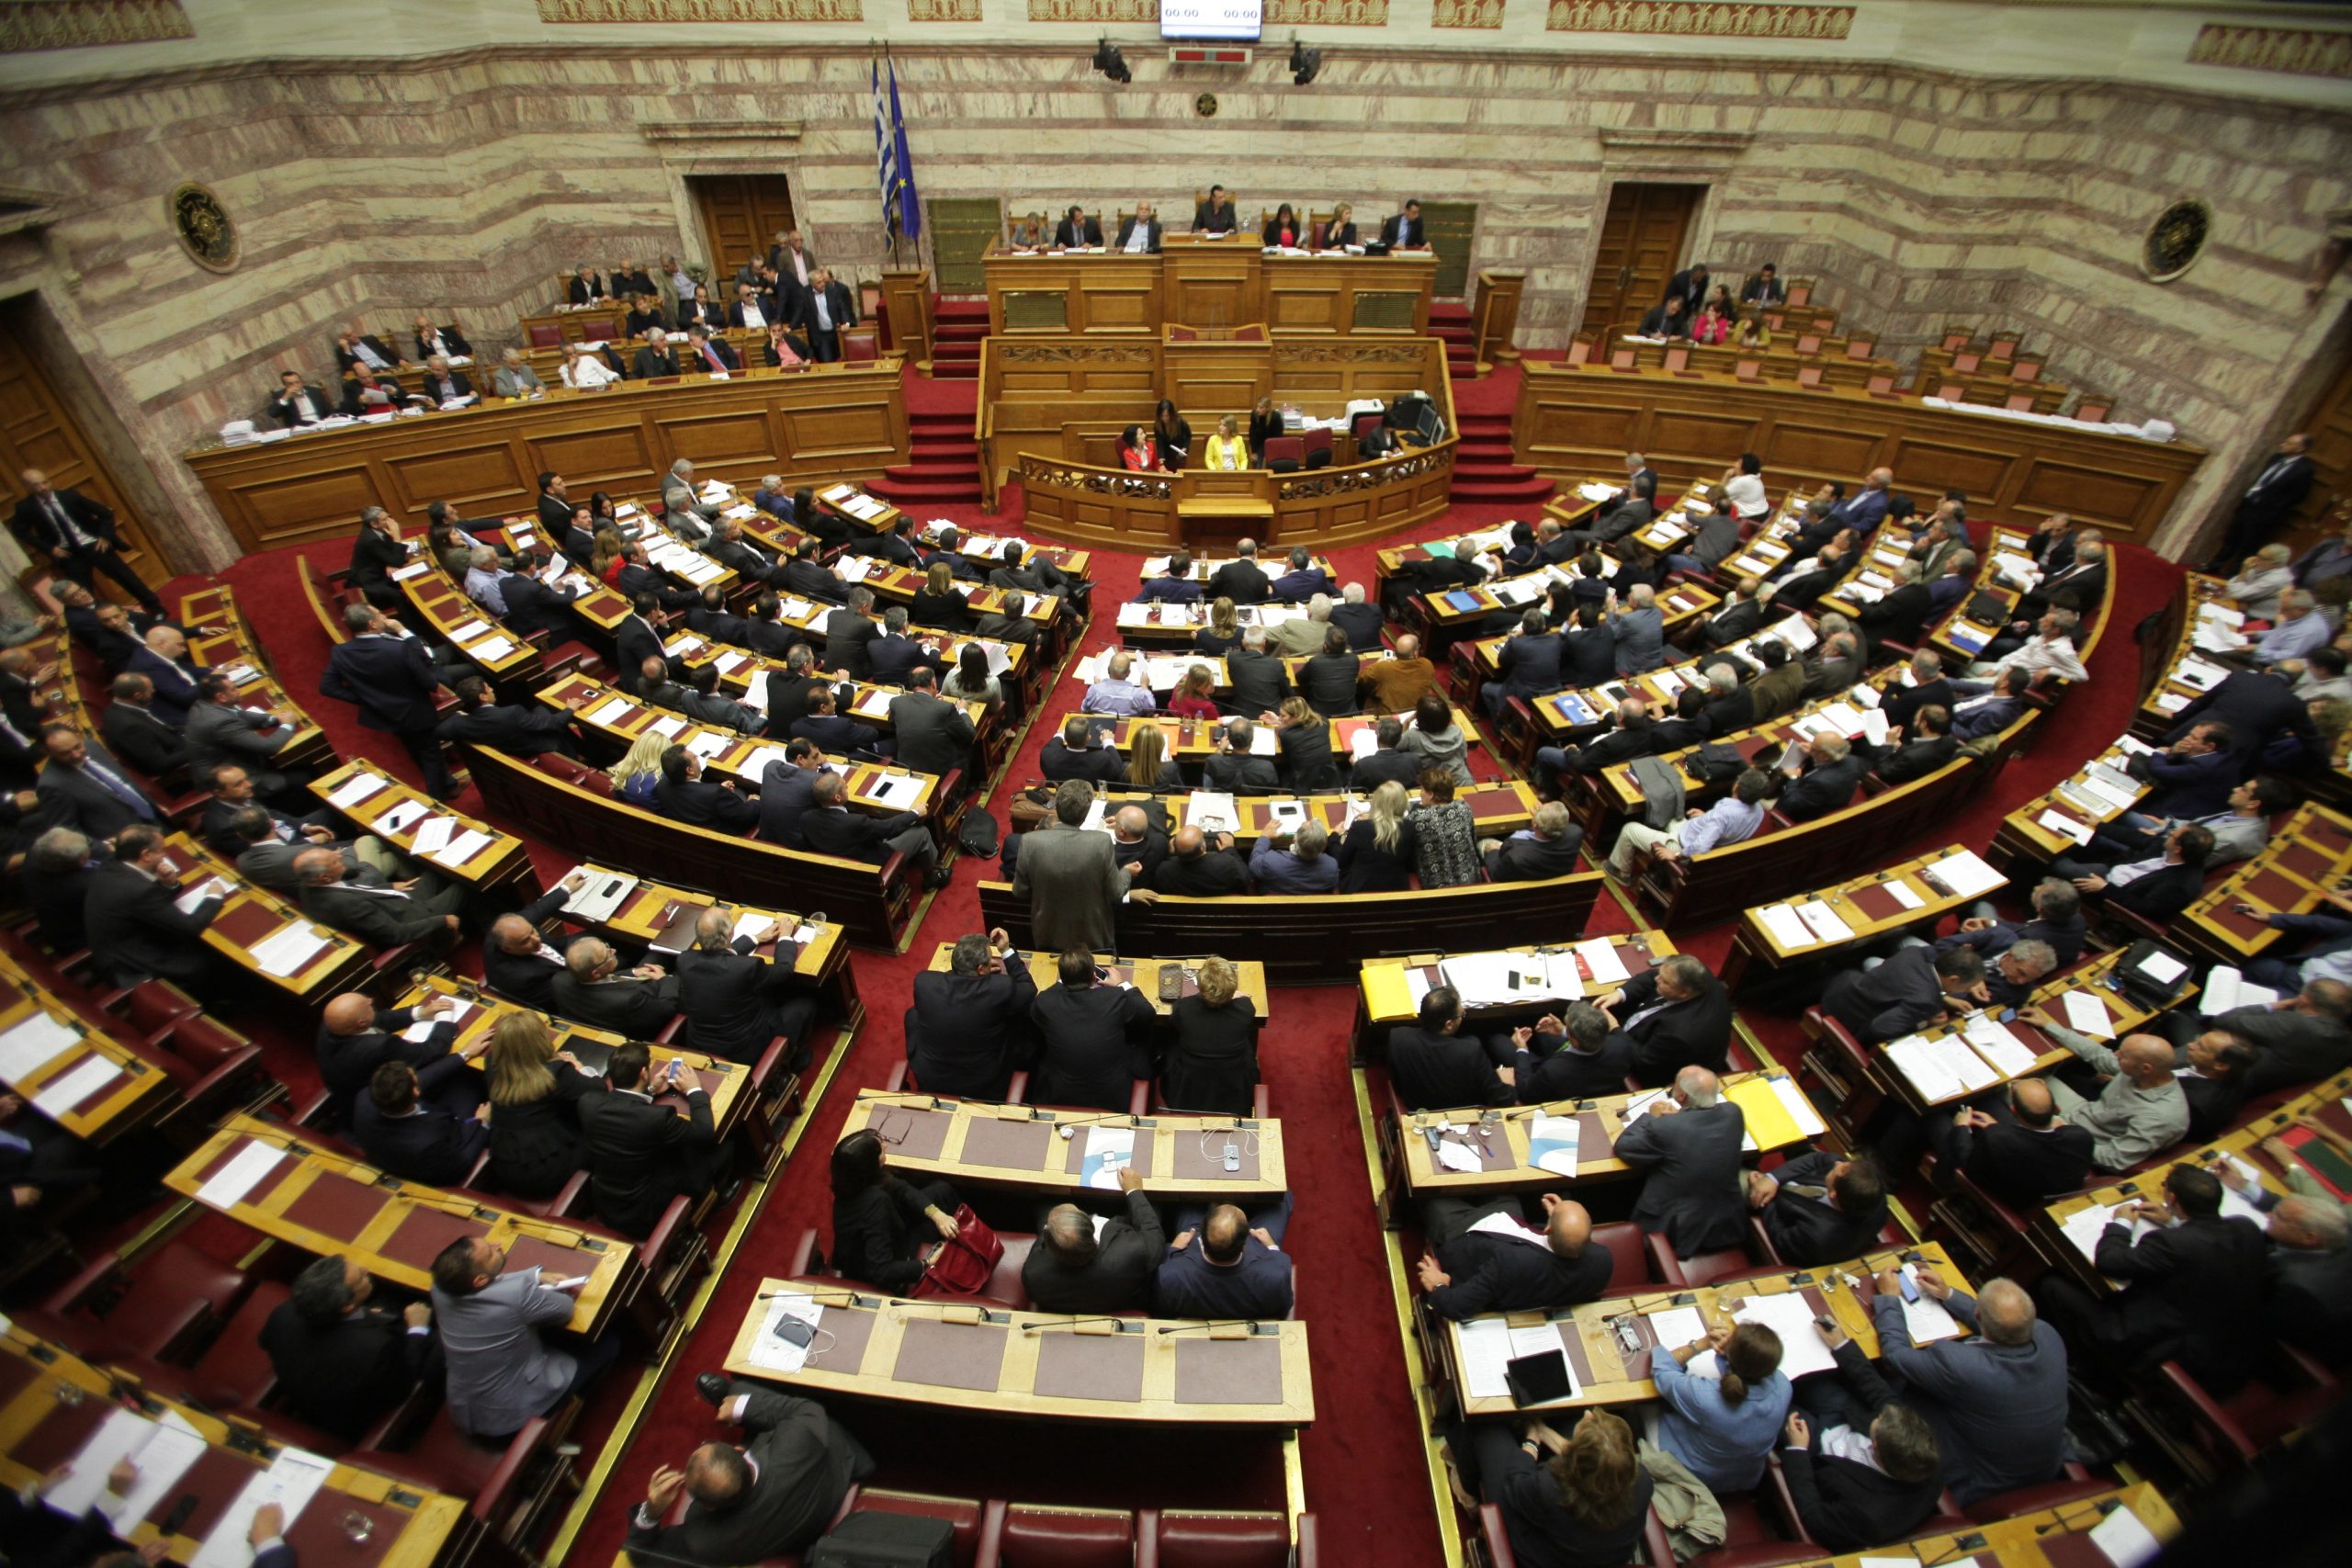 Ψηφίζεται σήμερα στην Ολομέλεια το αναπτυξιακό νομοσχέδιο